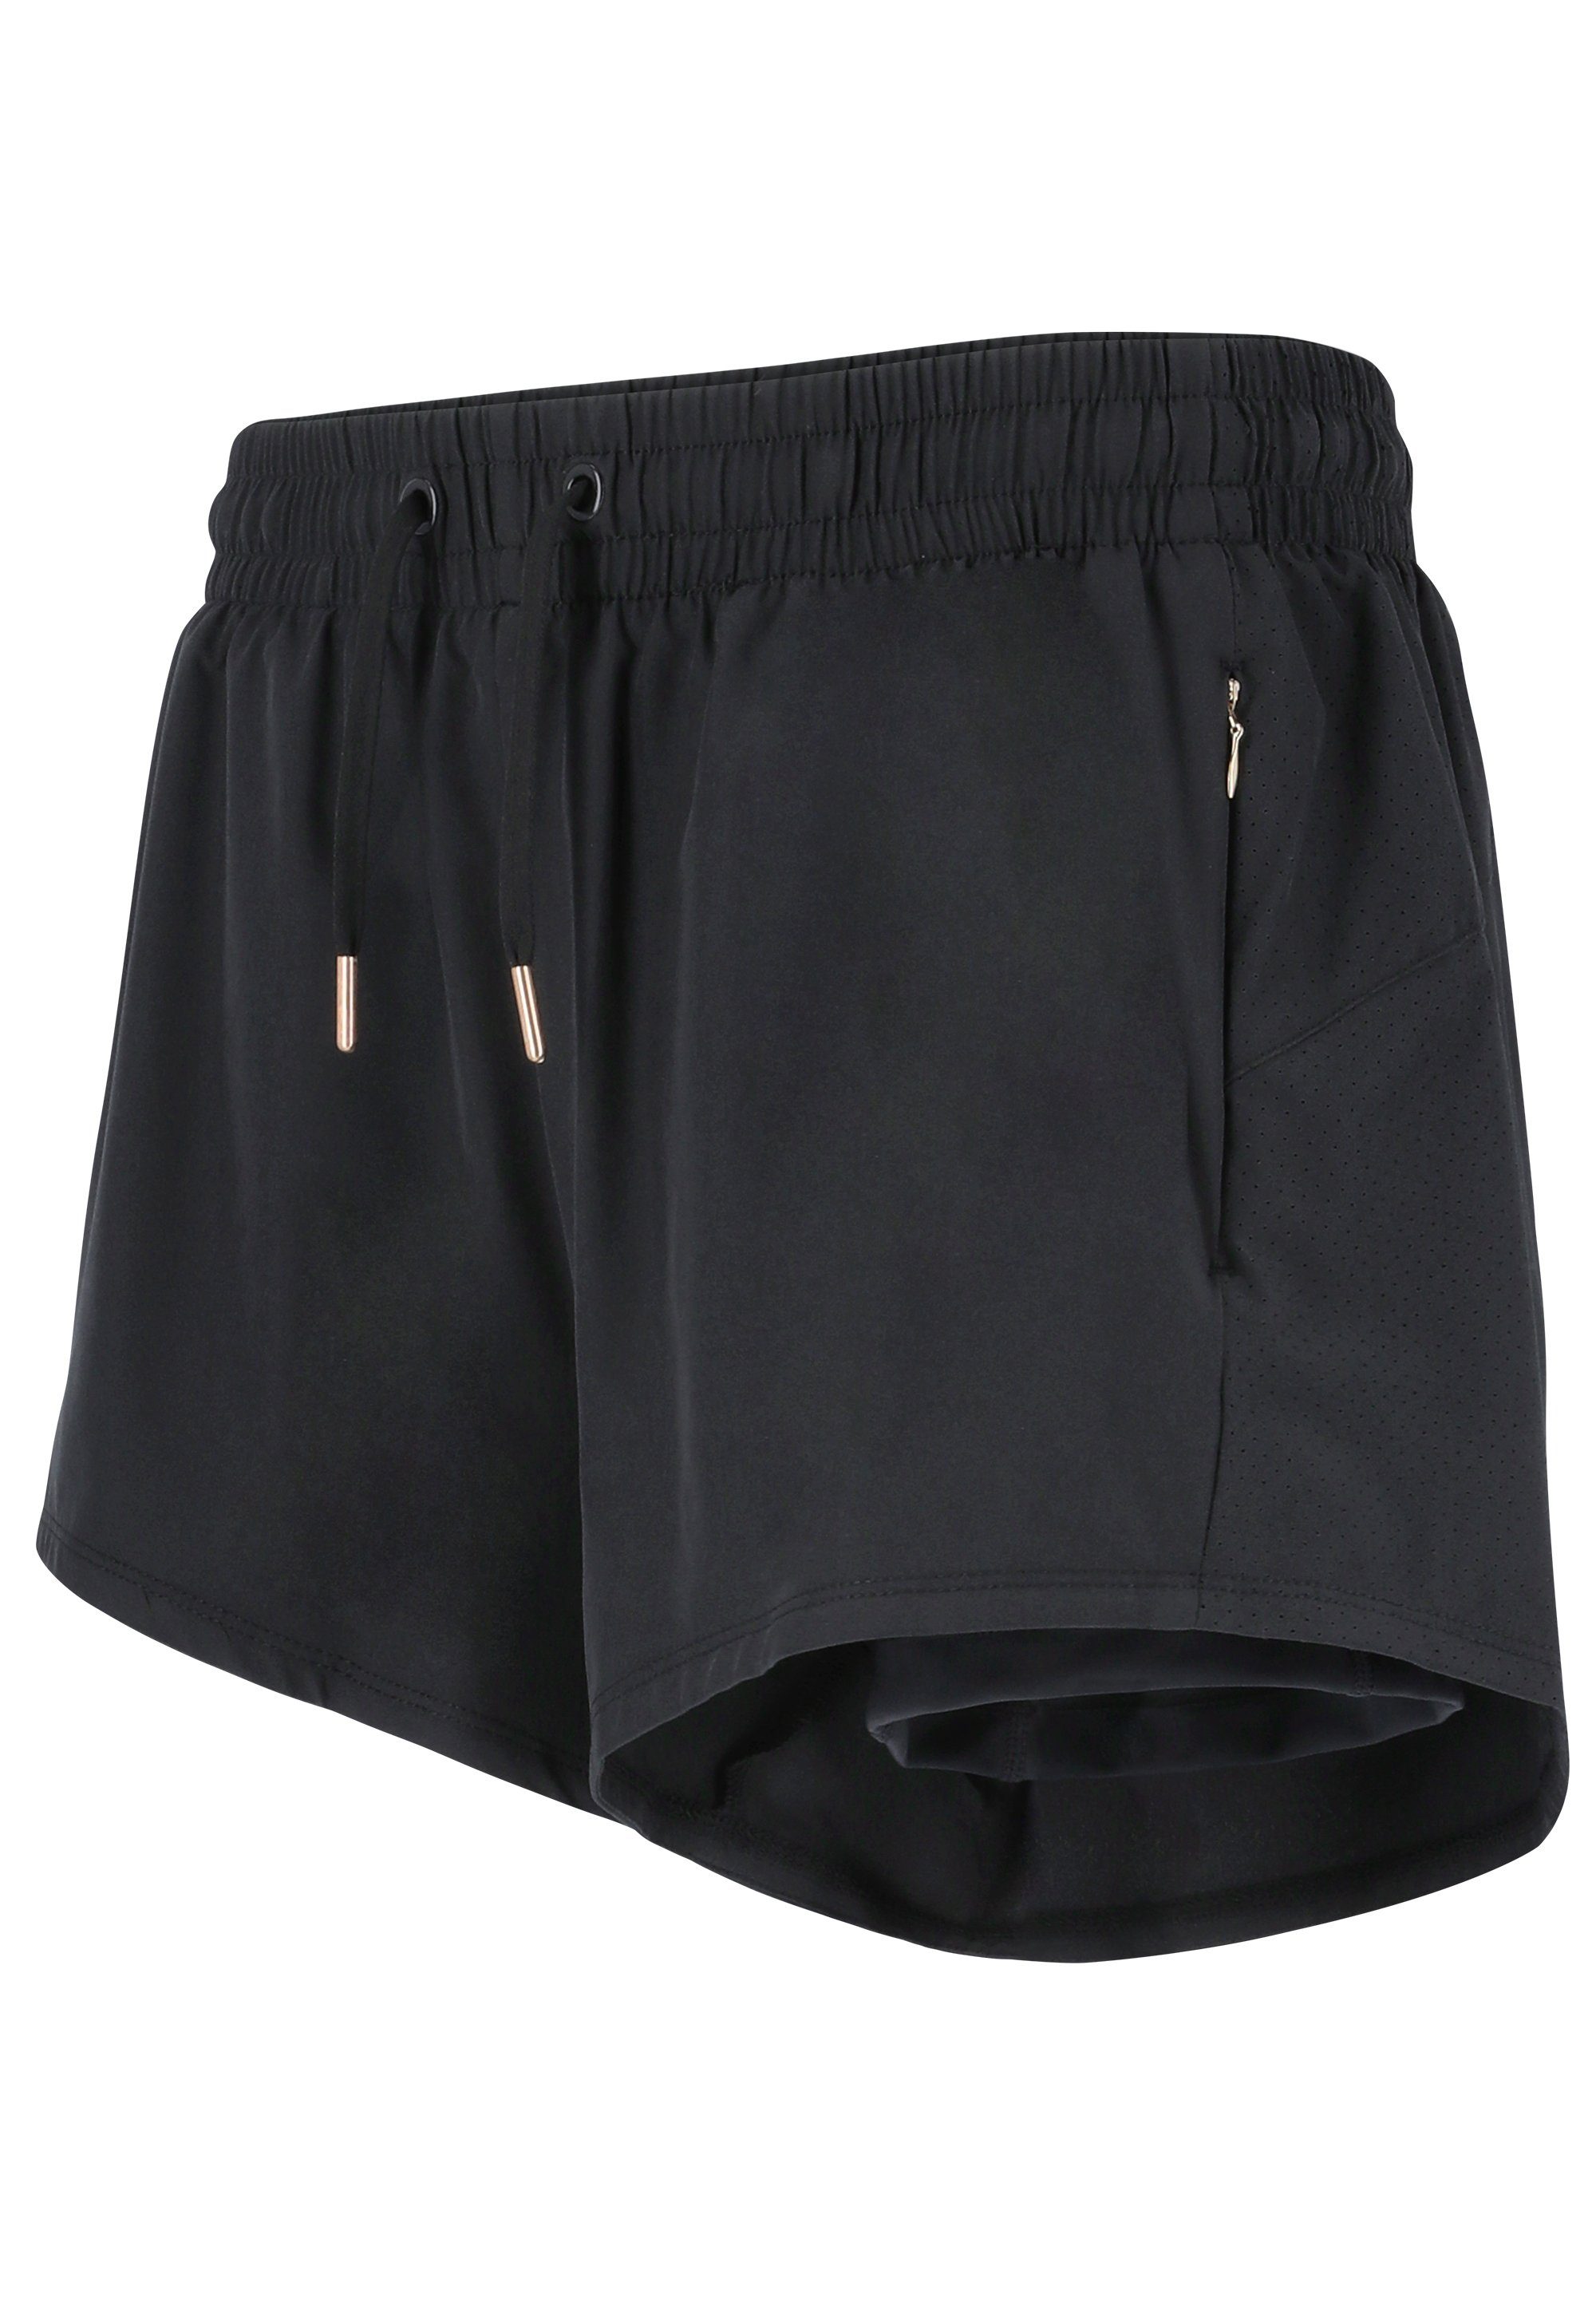 Shorts praktischen ENDURANCE schwarz Eslaire Taschen mit